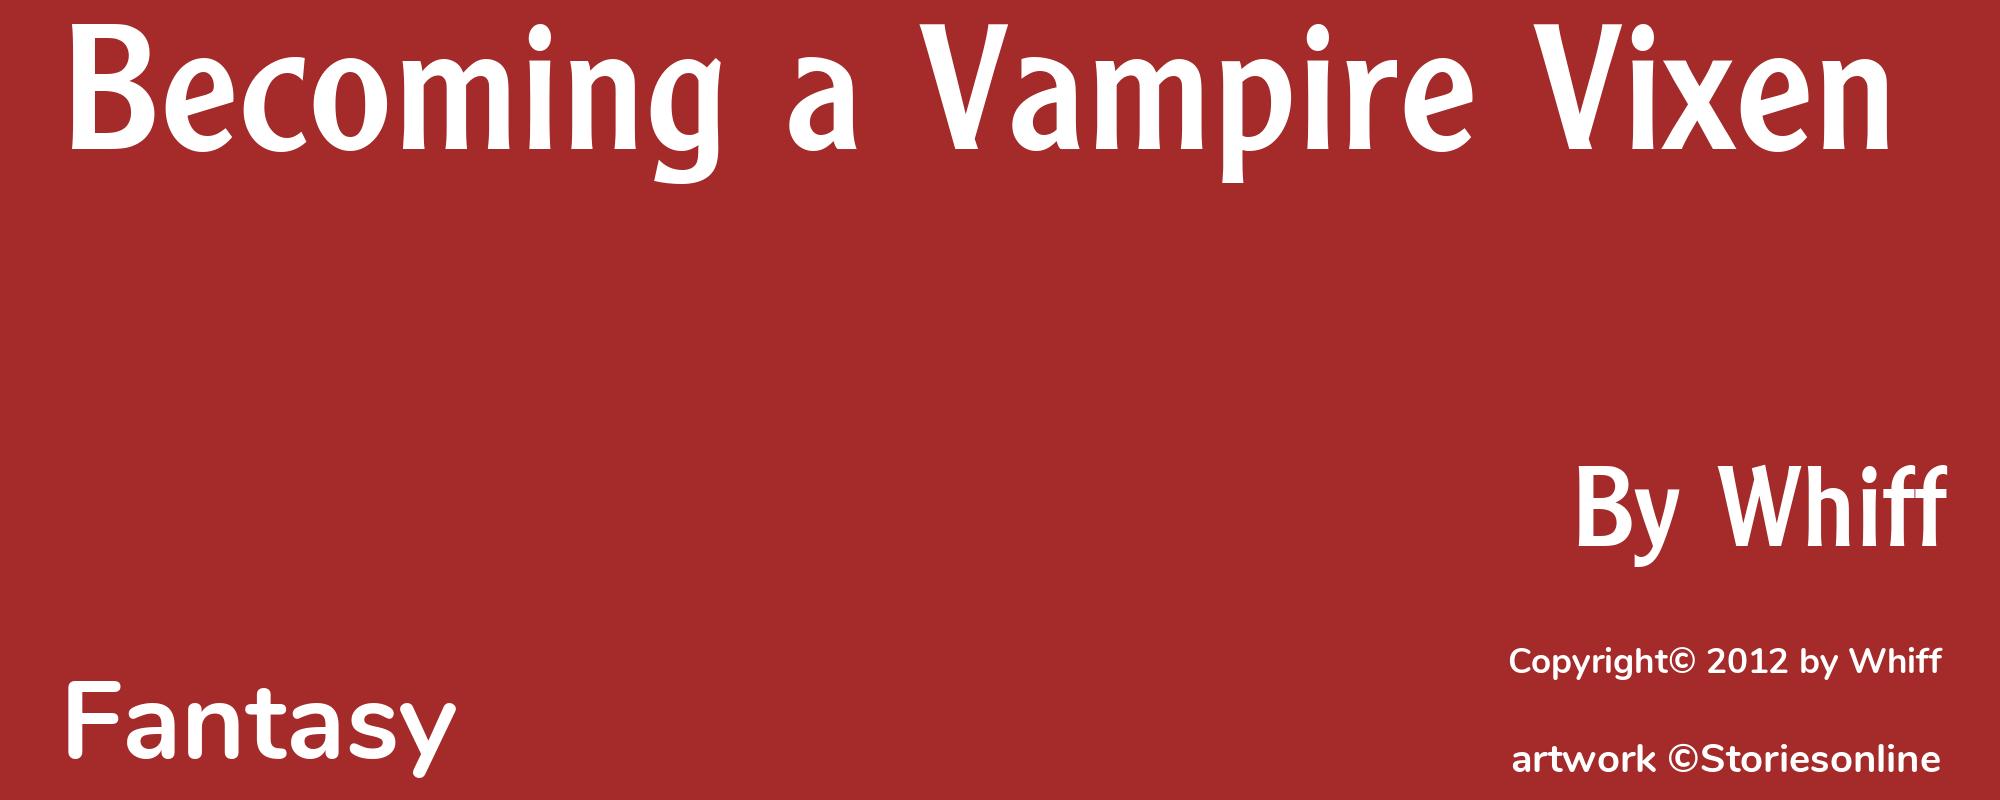 Becoming a Vampire Vixen - Cover